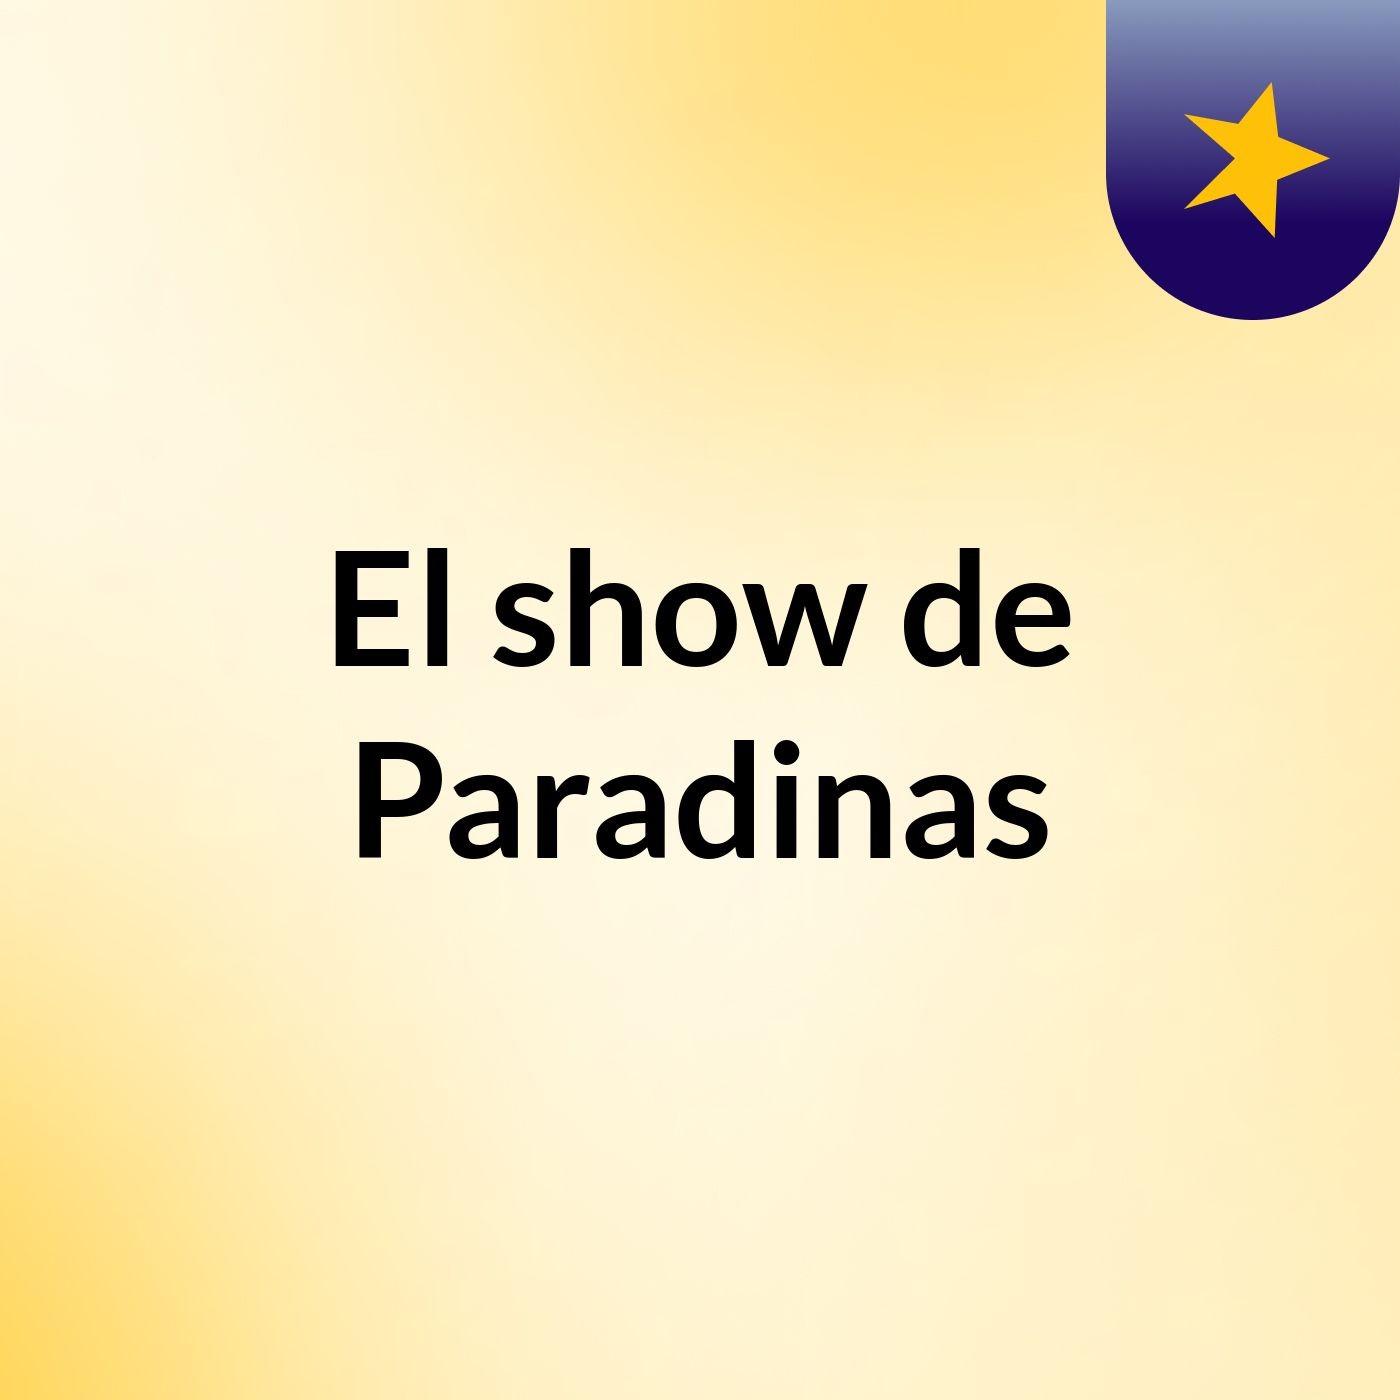 El show de Paradinas